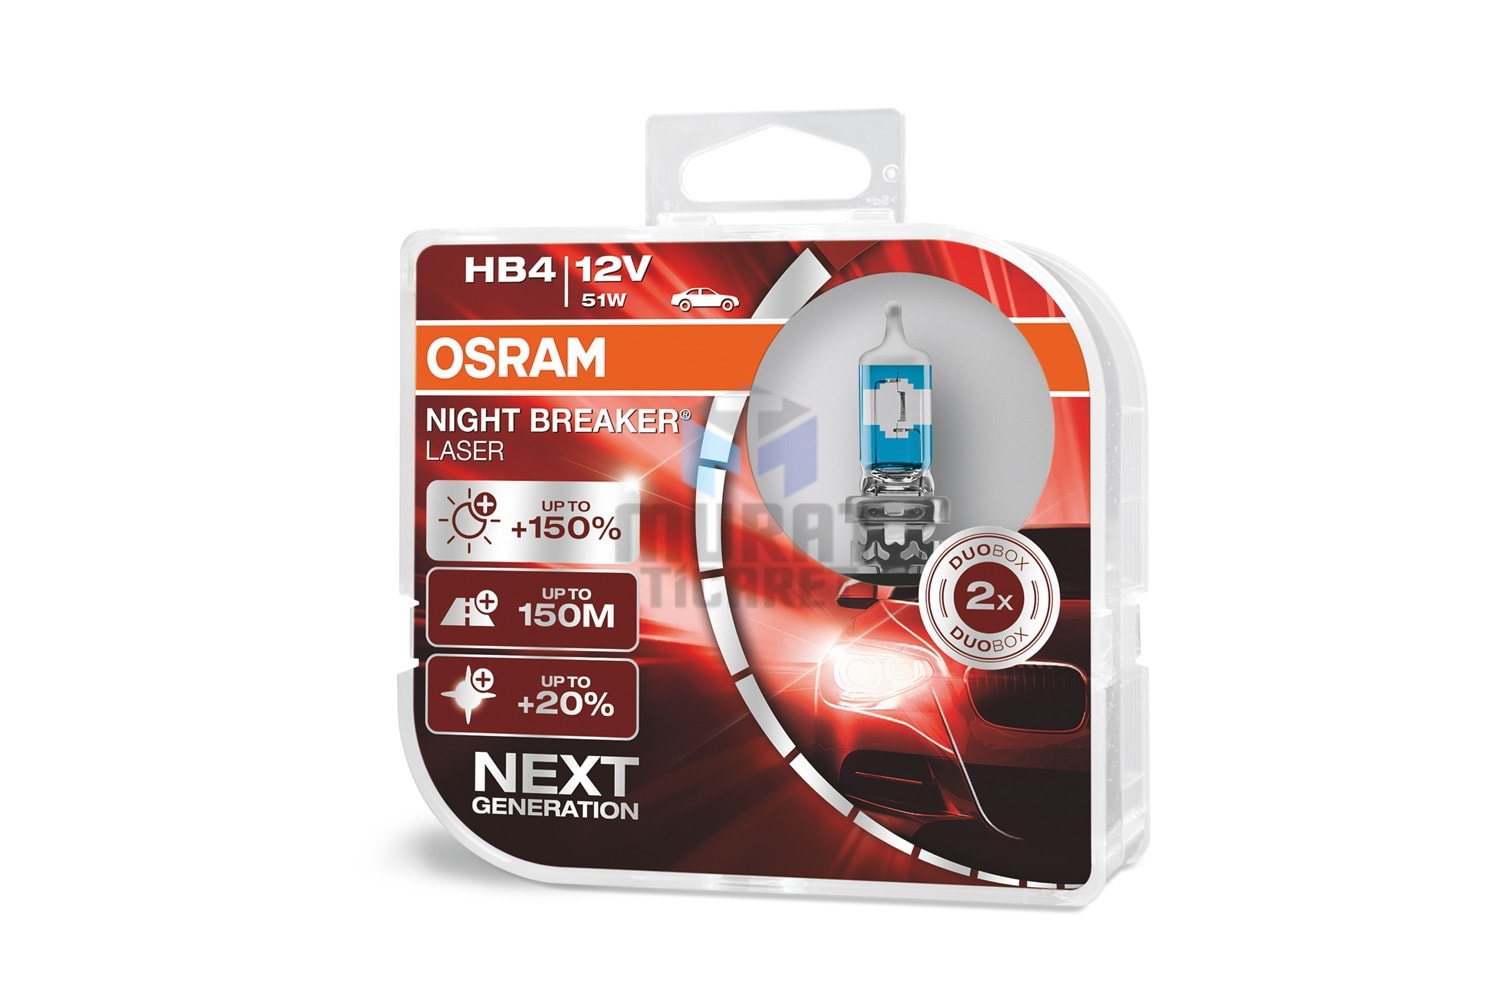 OSRAM NIGHT BREAKER LASER, HB4-12 Volt 55 Watt